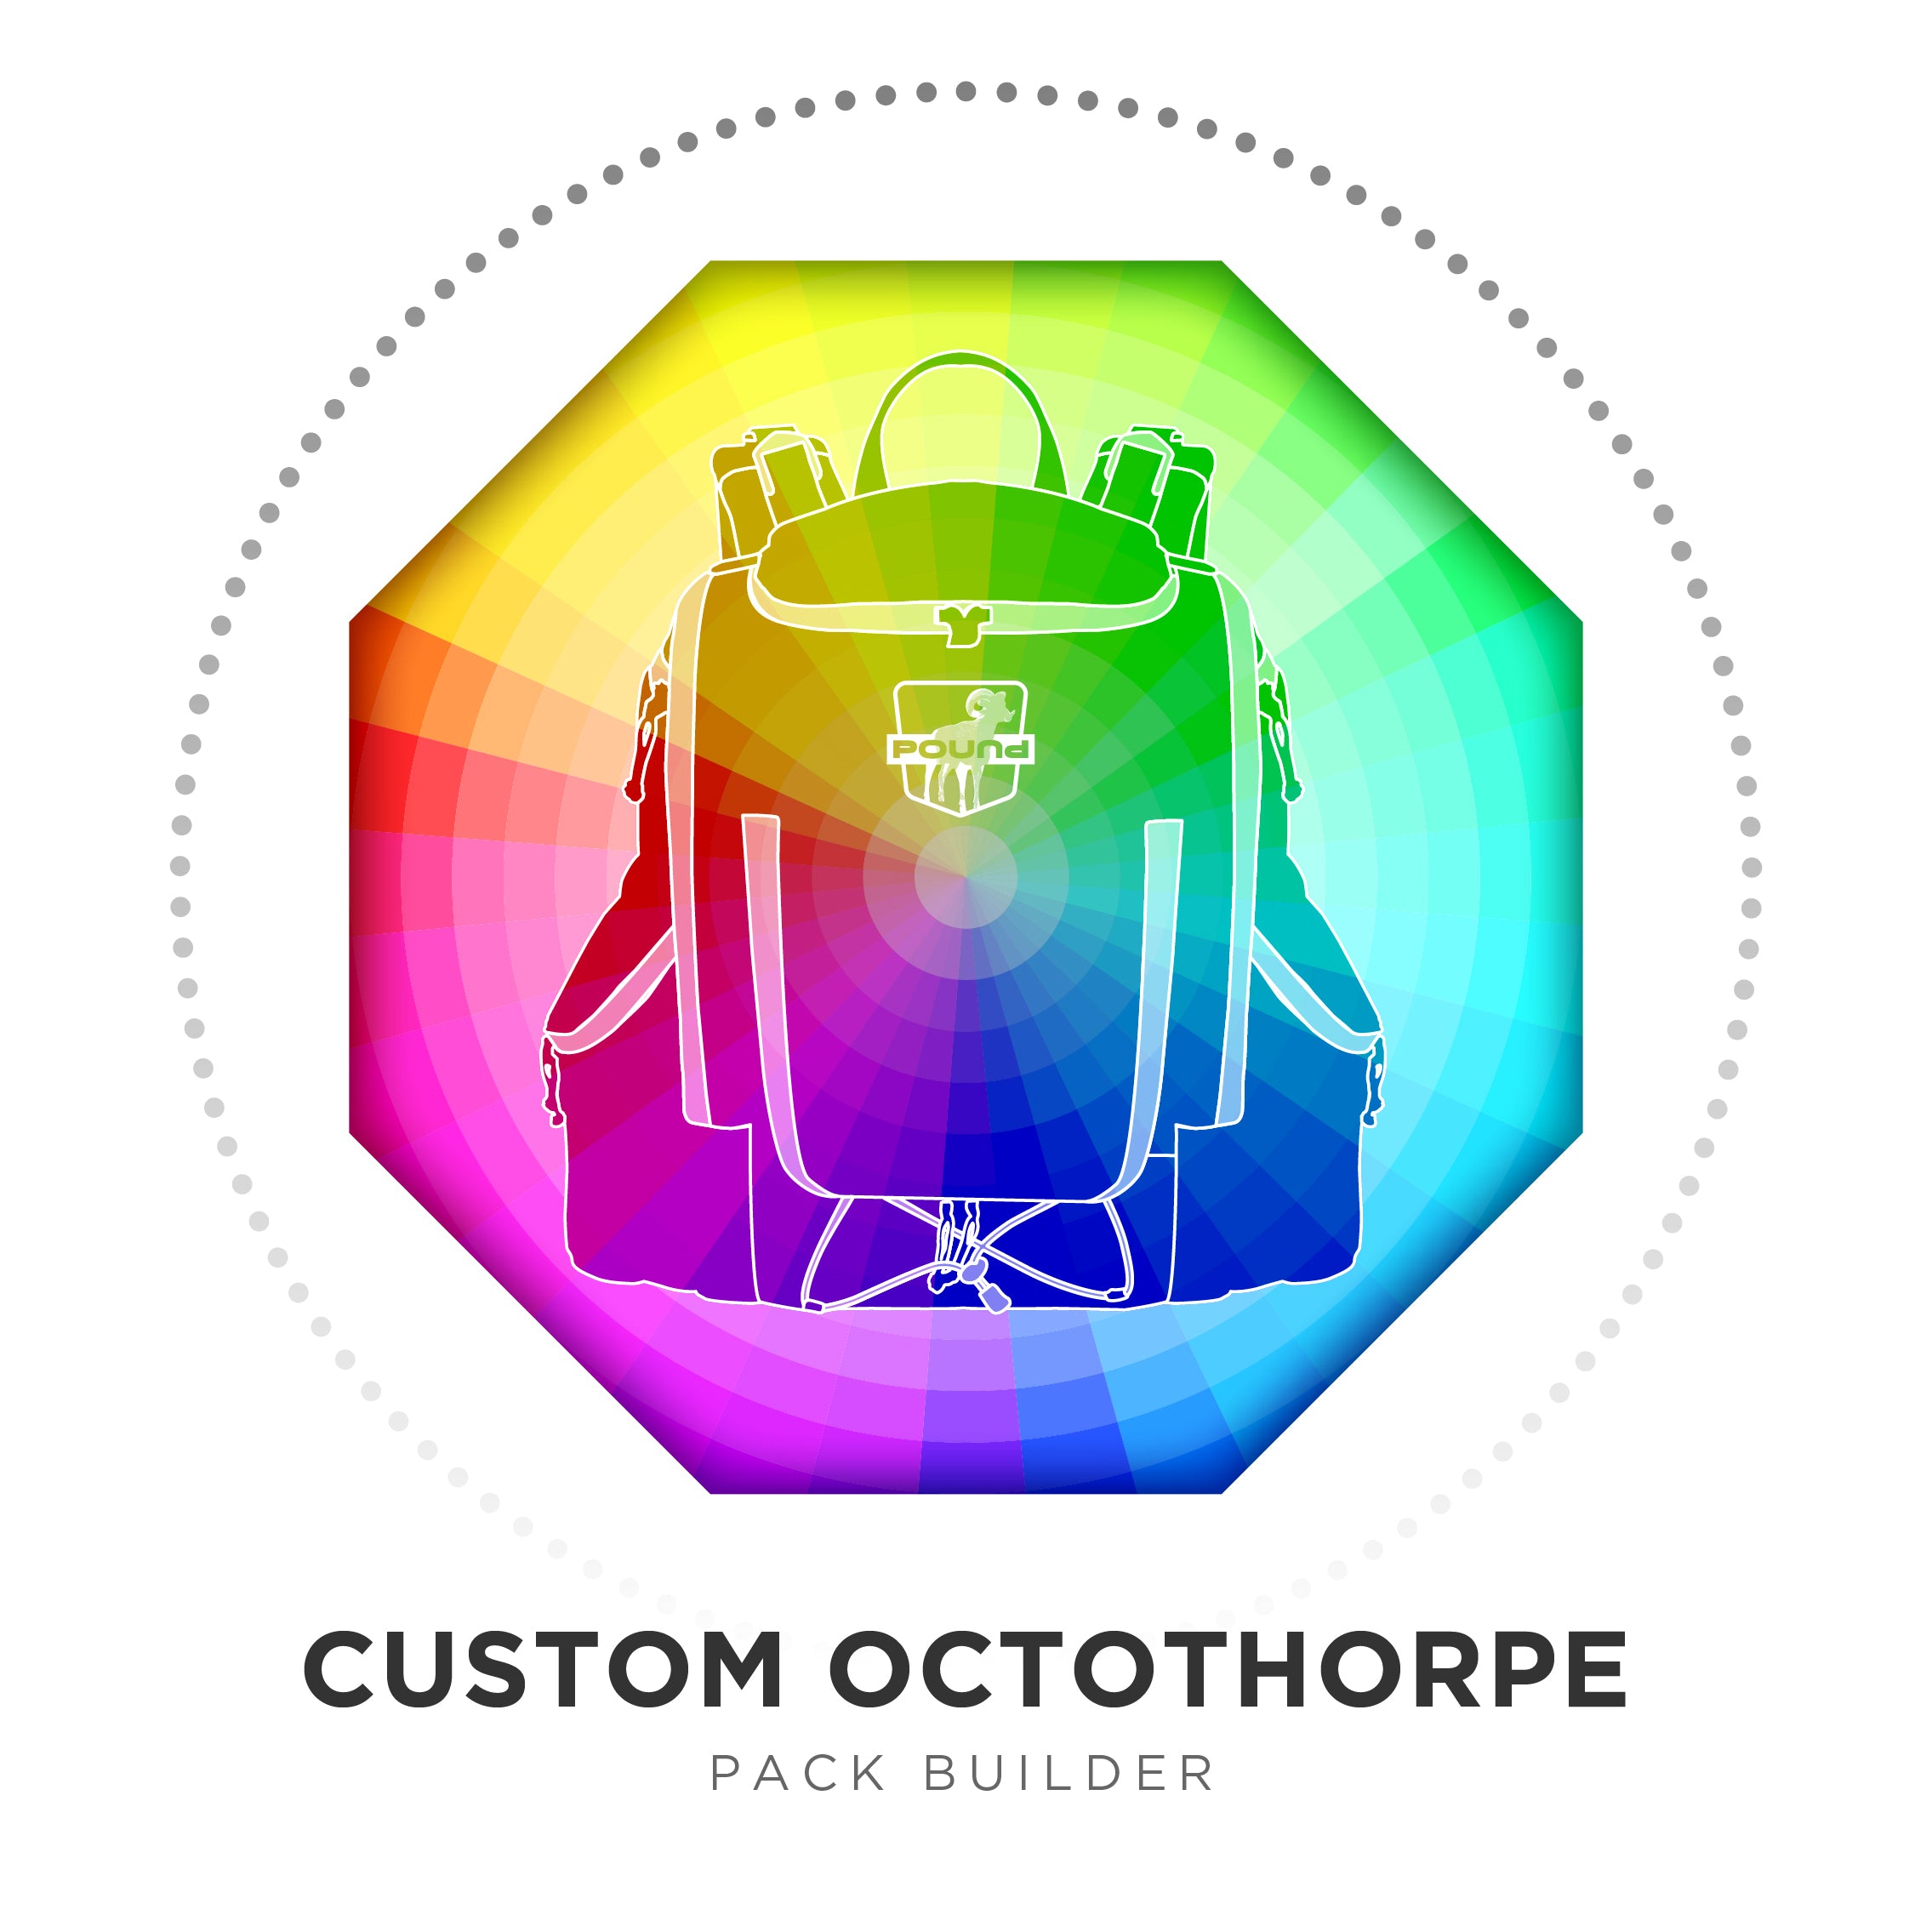 Custom Octothorpe: Pack Builder